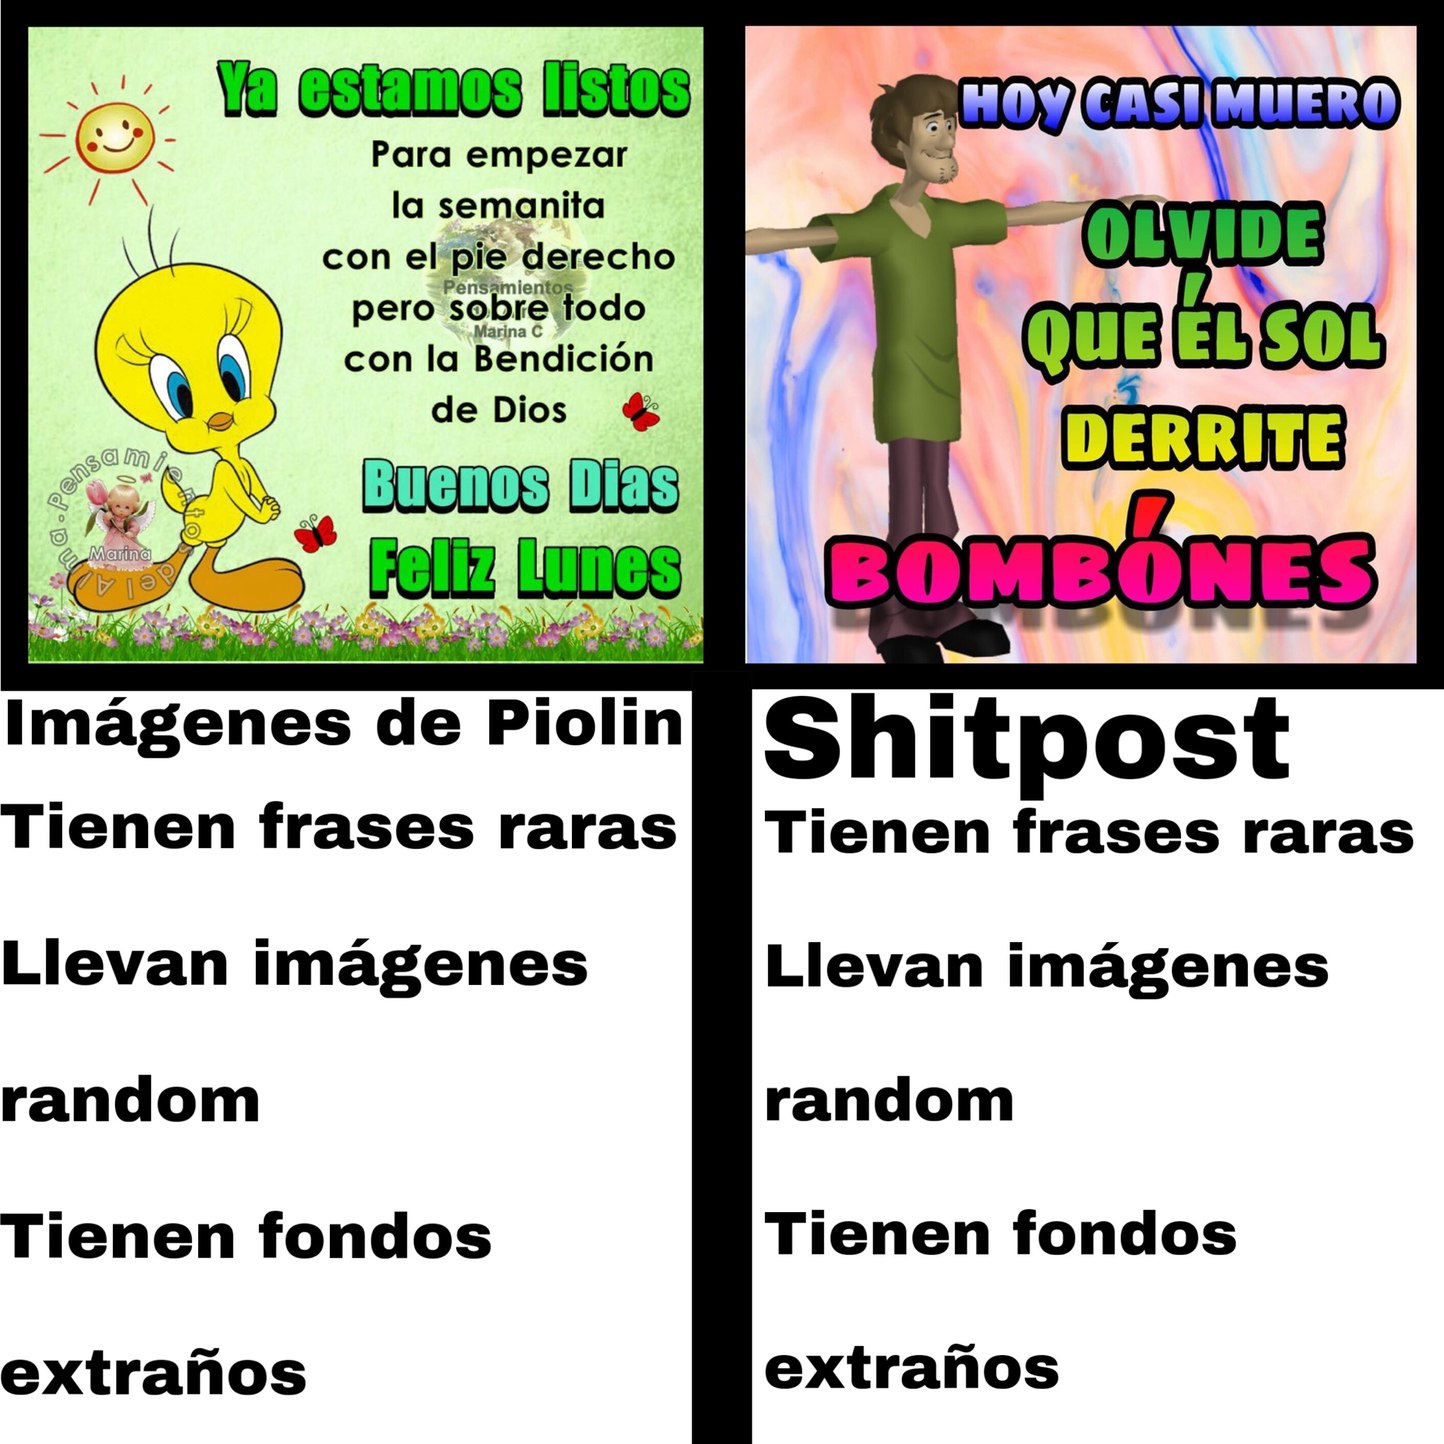 comparación shitpost vs piolin - meme